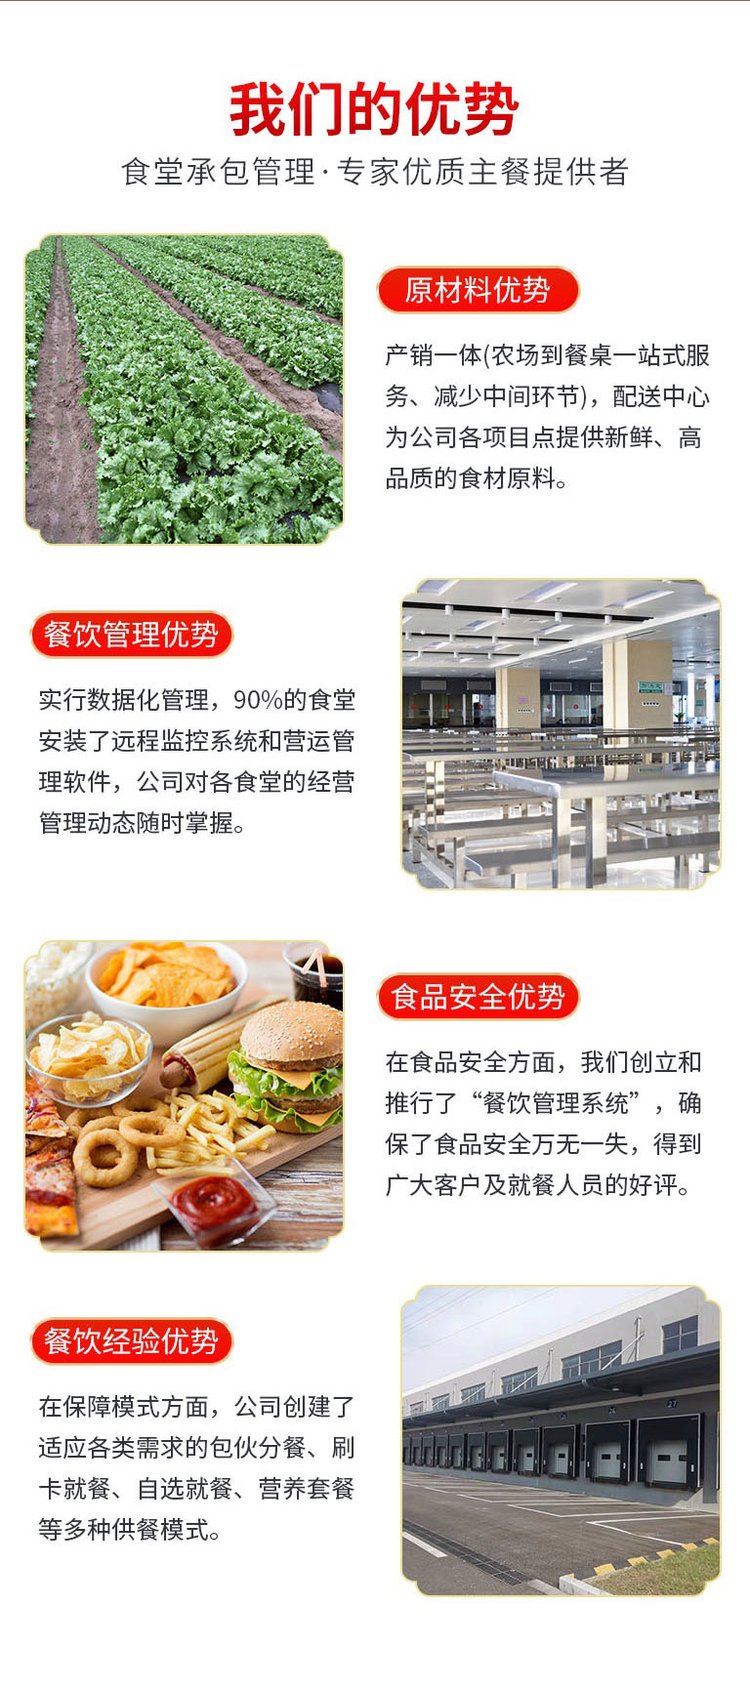 广州黄埔农副产品批发食堂蔬菜配送公司报价表